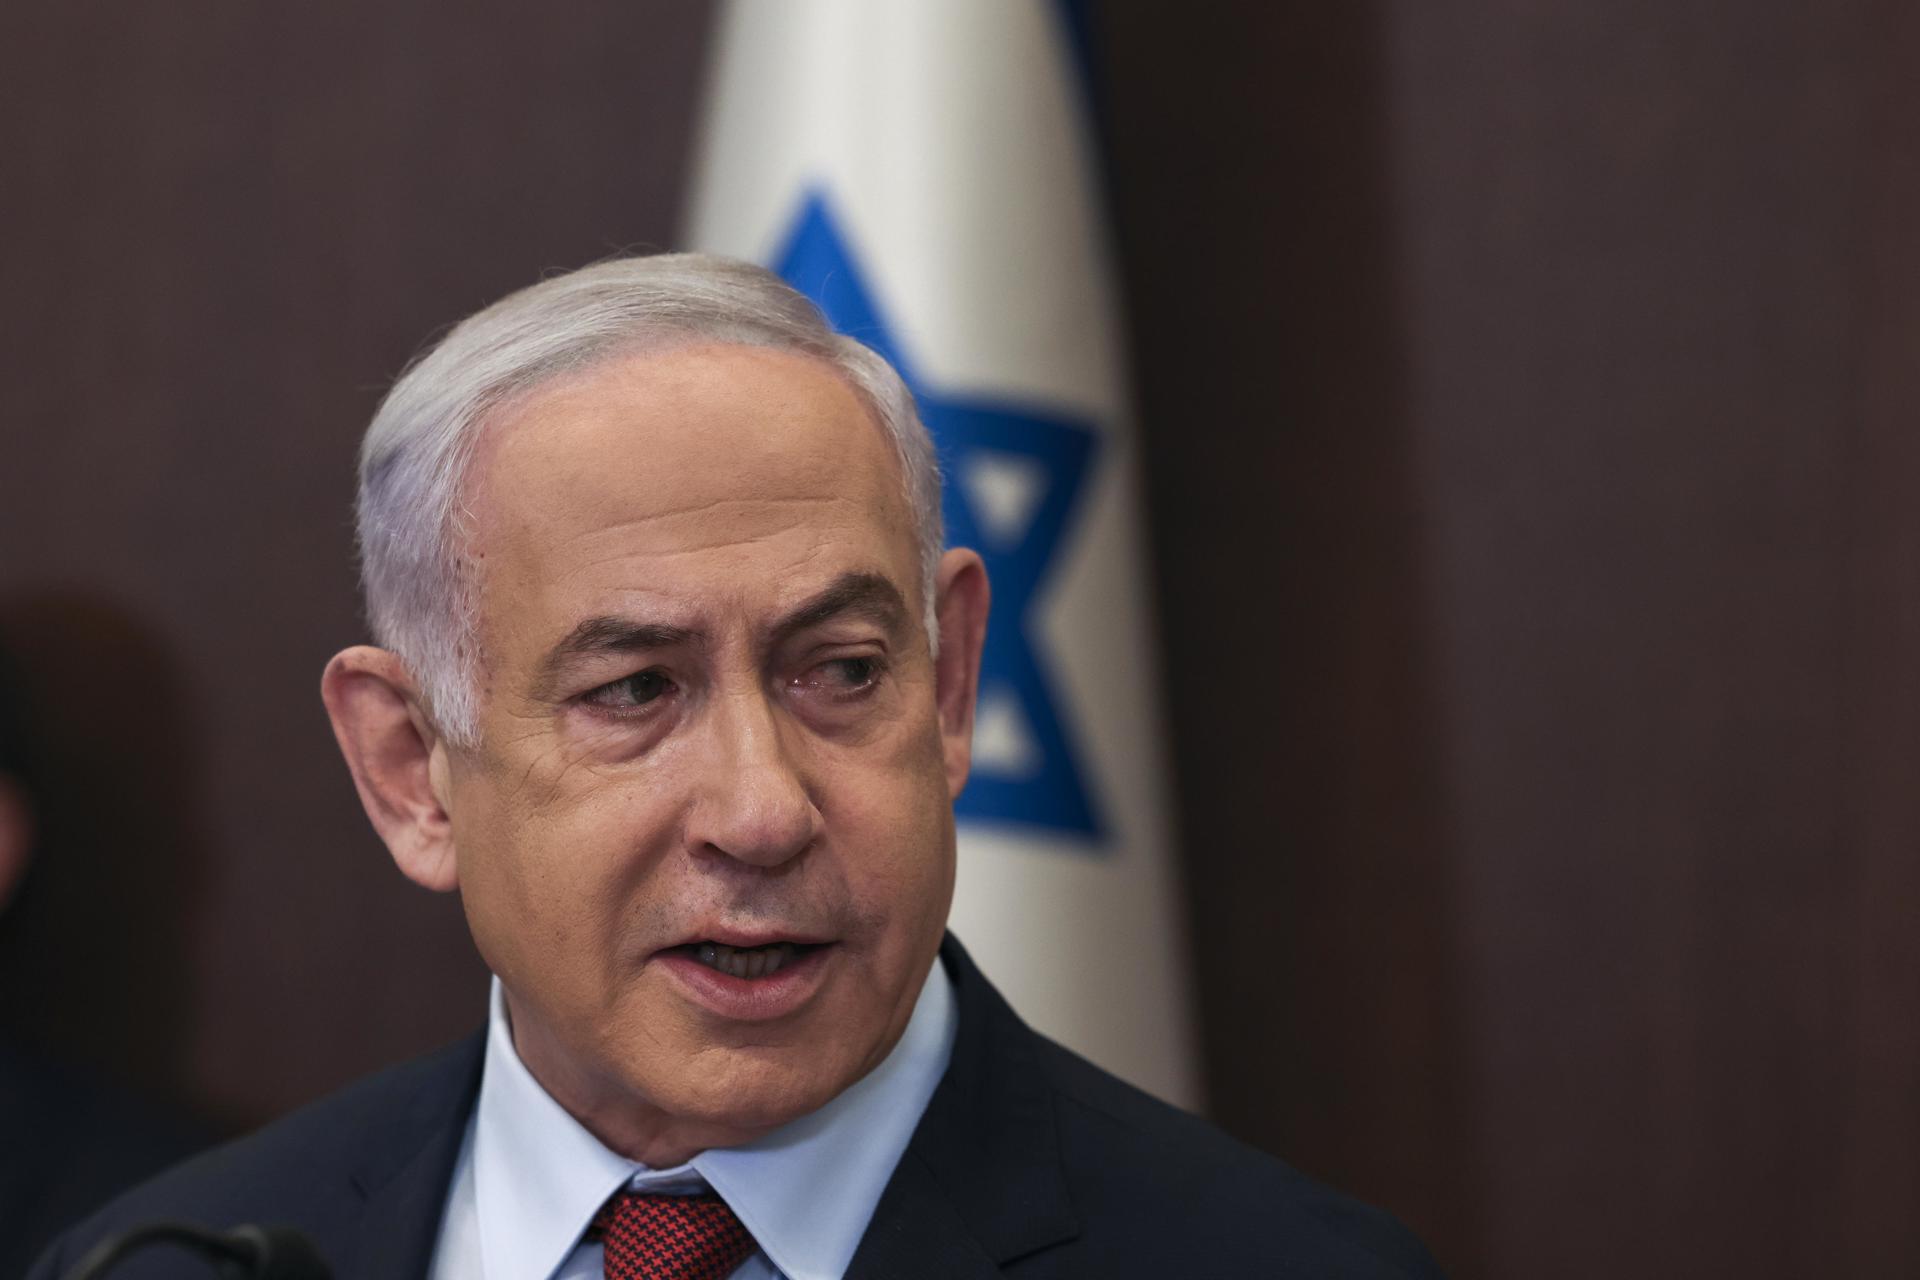 Netanyahu ofreció condolencias a las familias de los rehenes que el Ejército mató por error